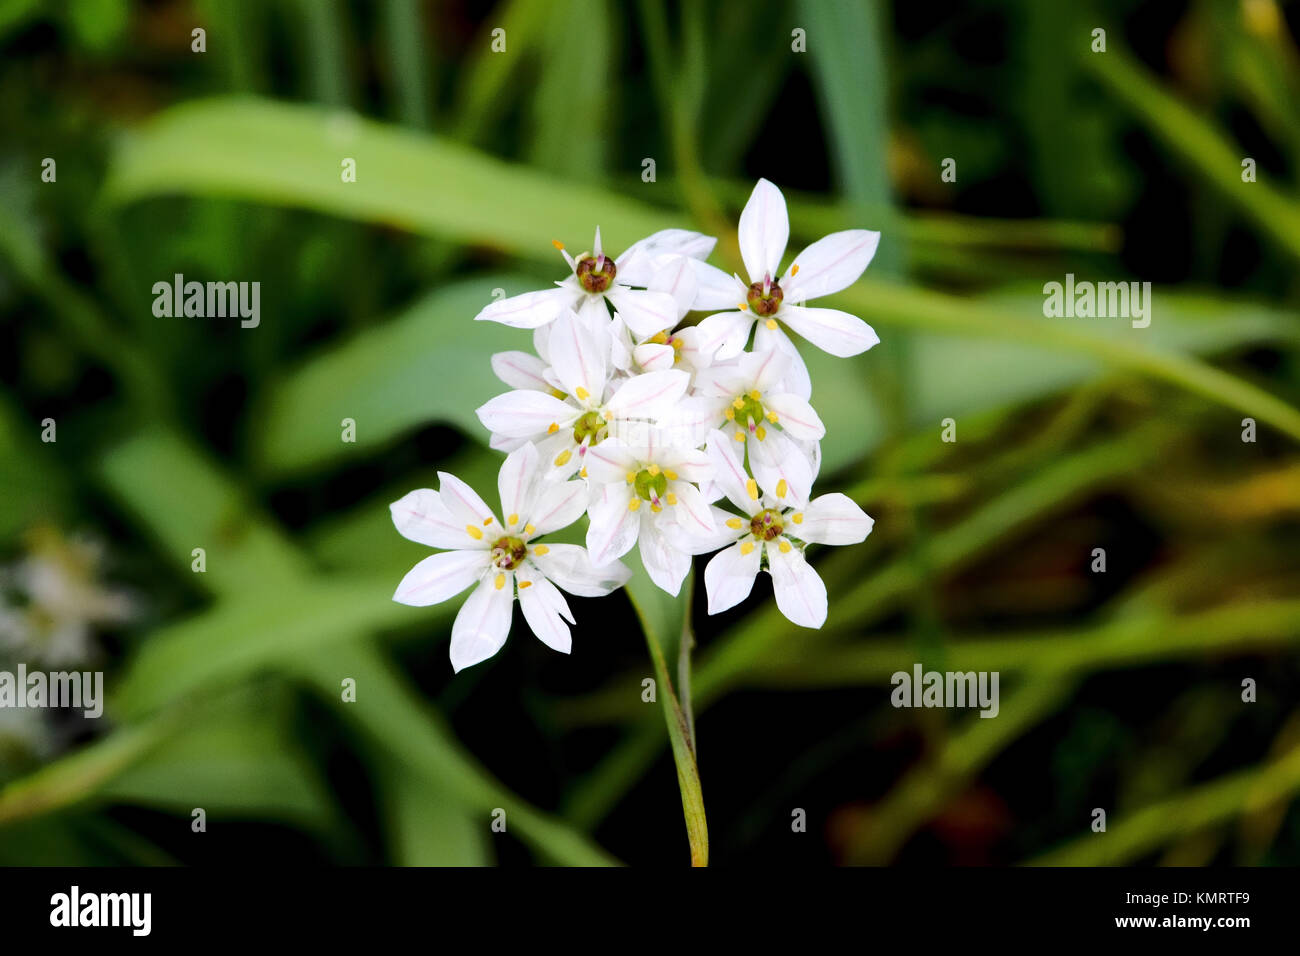 White alium flowers Stock Photo